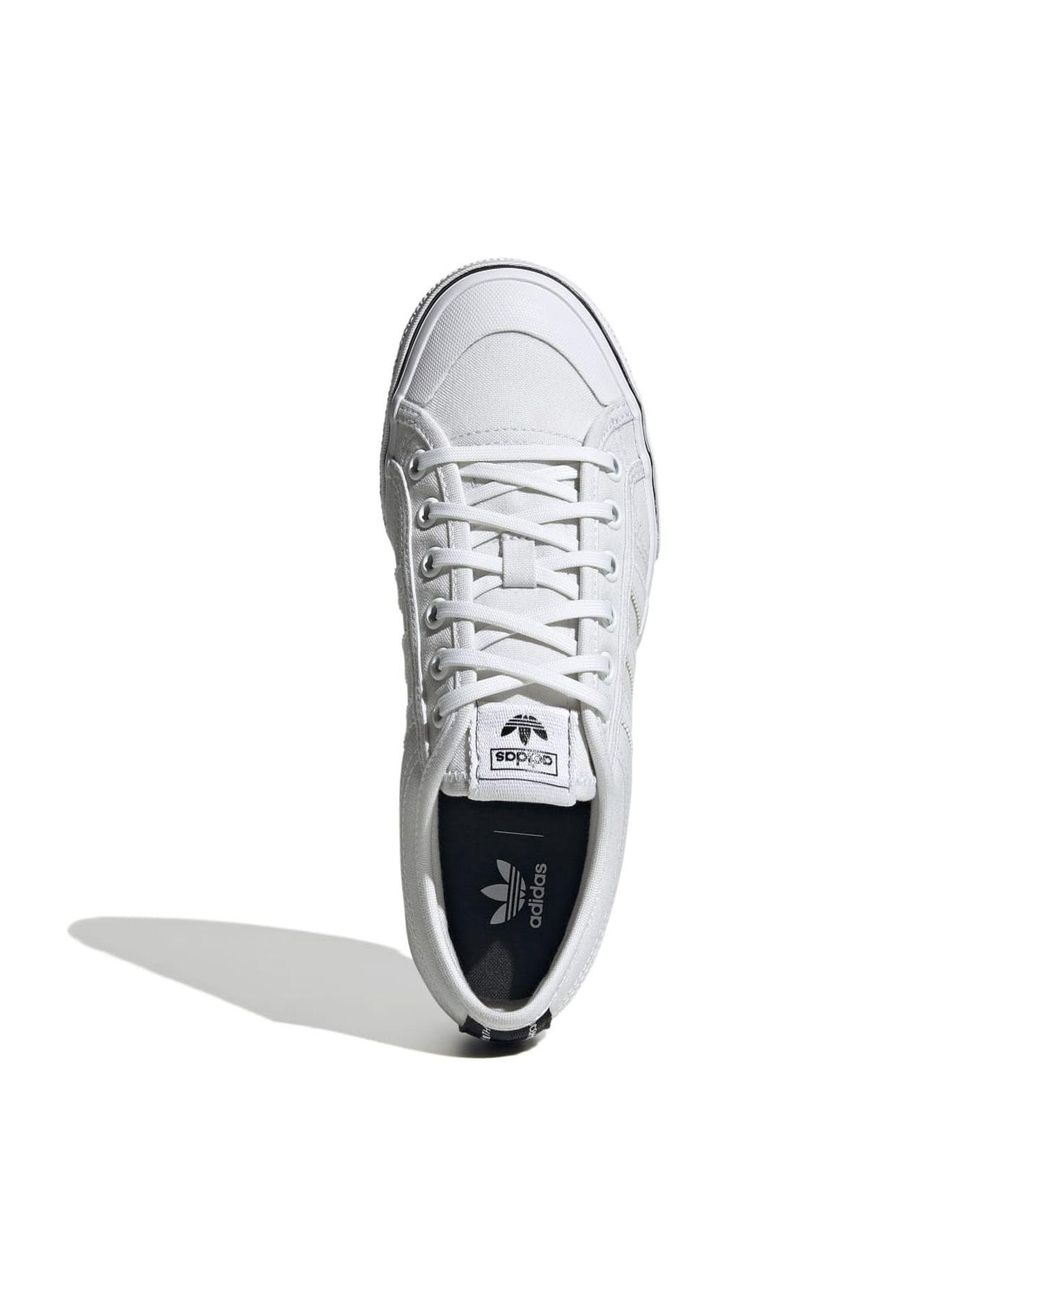 adidas Originals Nizza Platform Trainers in White | Lyst UK